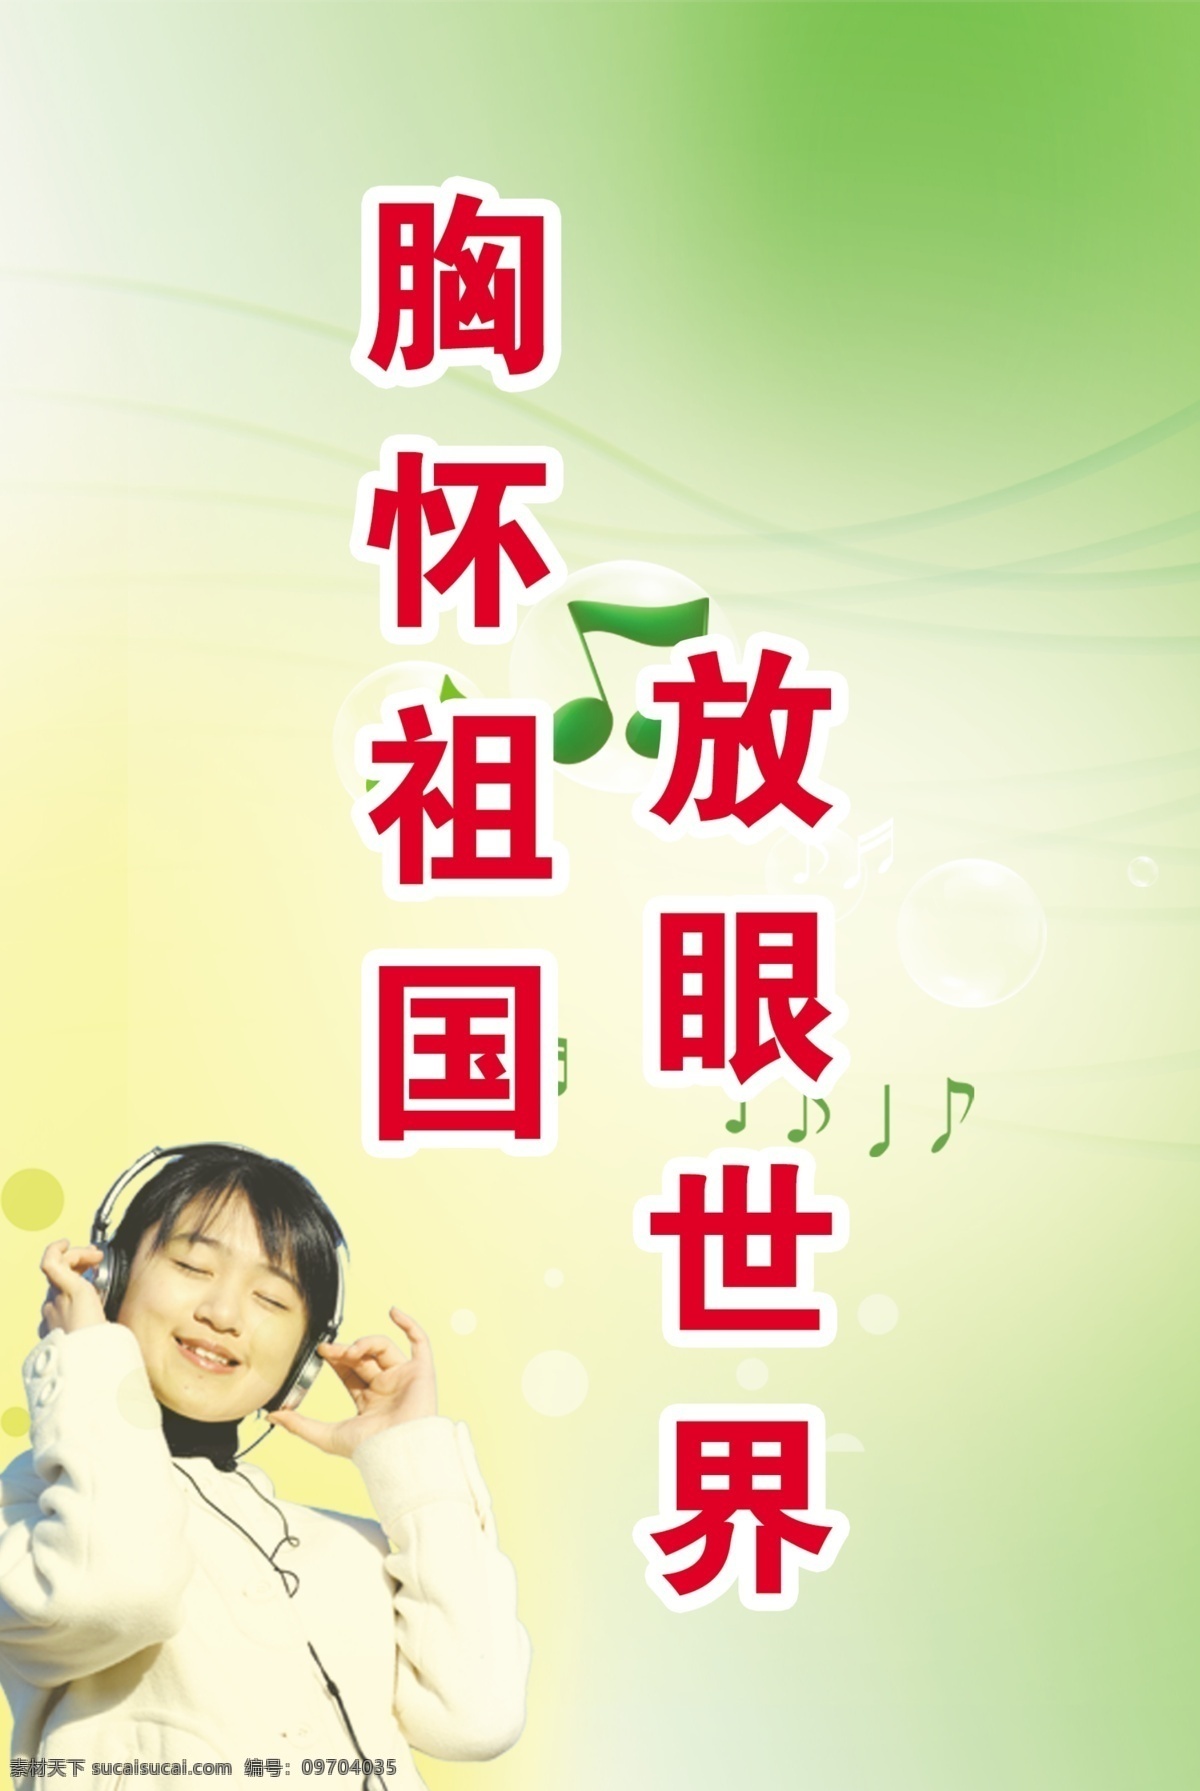 放眼看世界 绿色背景 戴耳机的美女 音乐符号 音符 分层 源文件